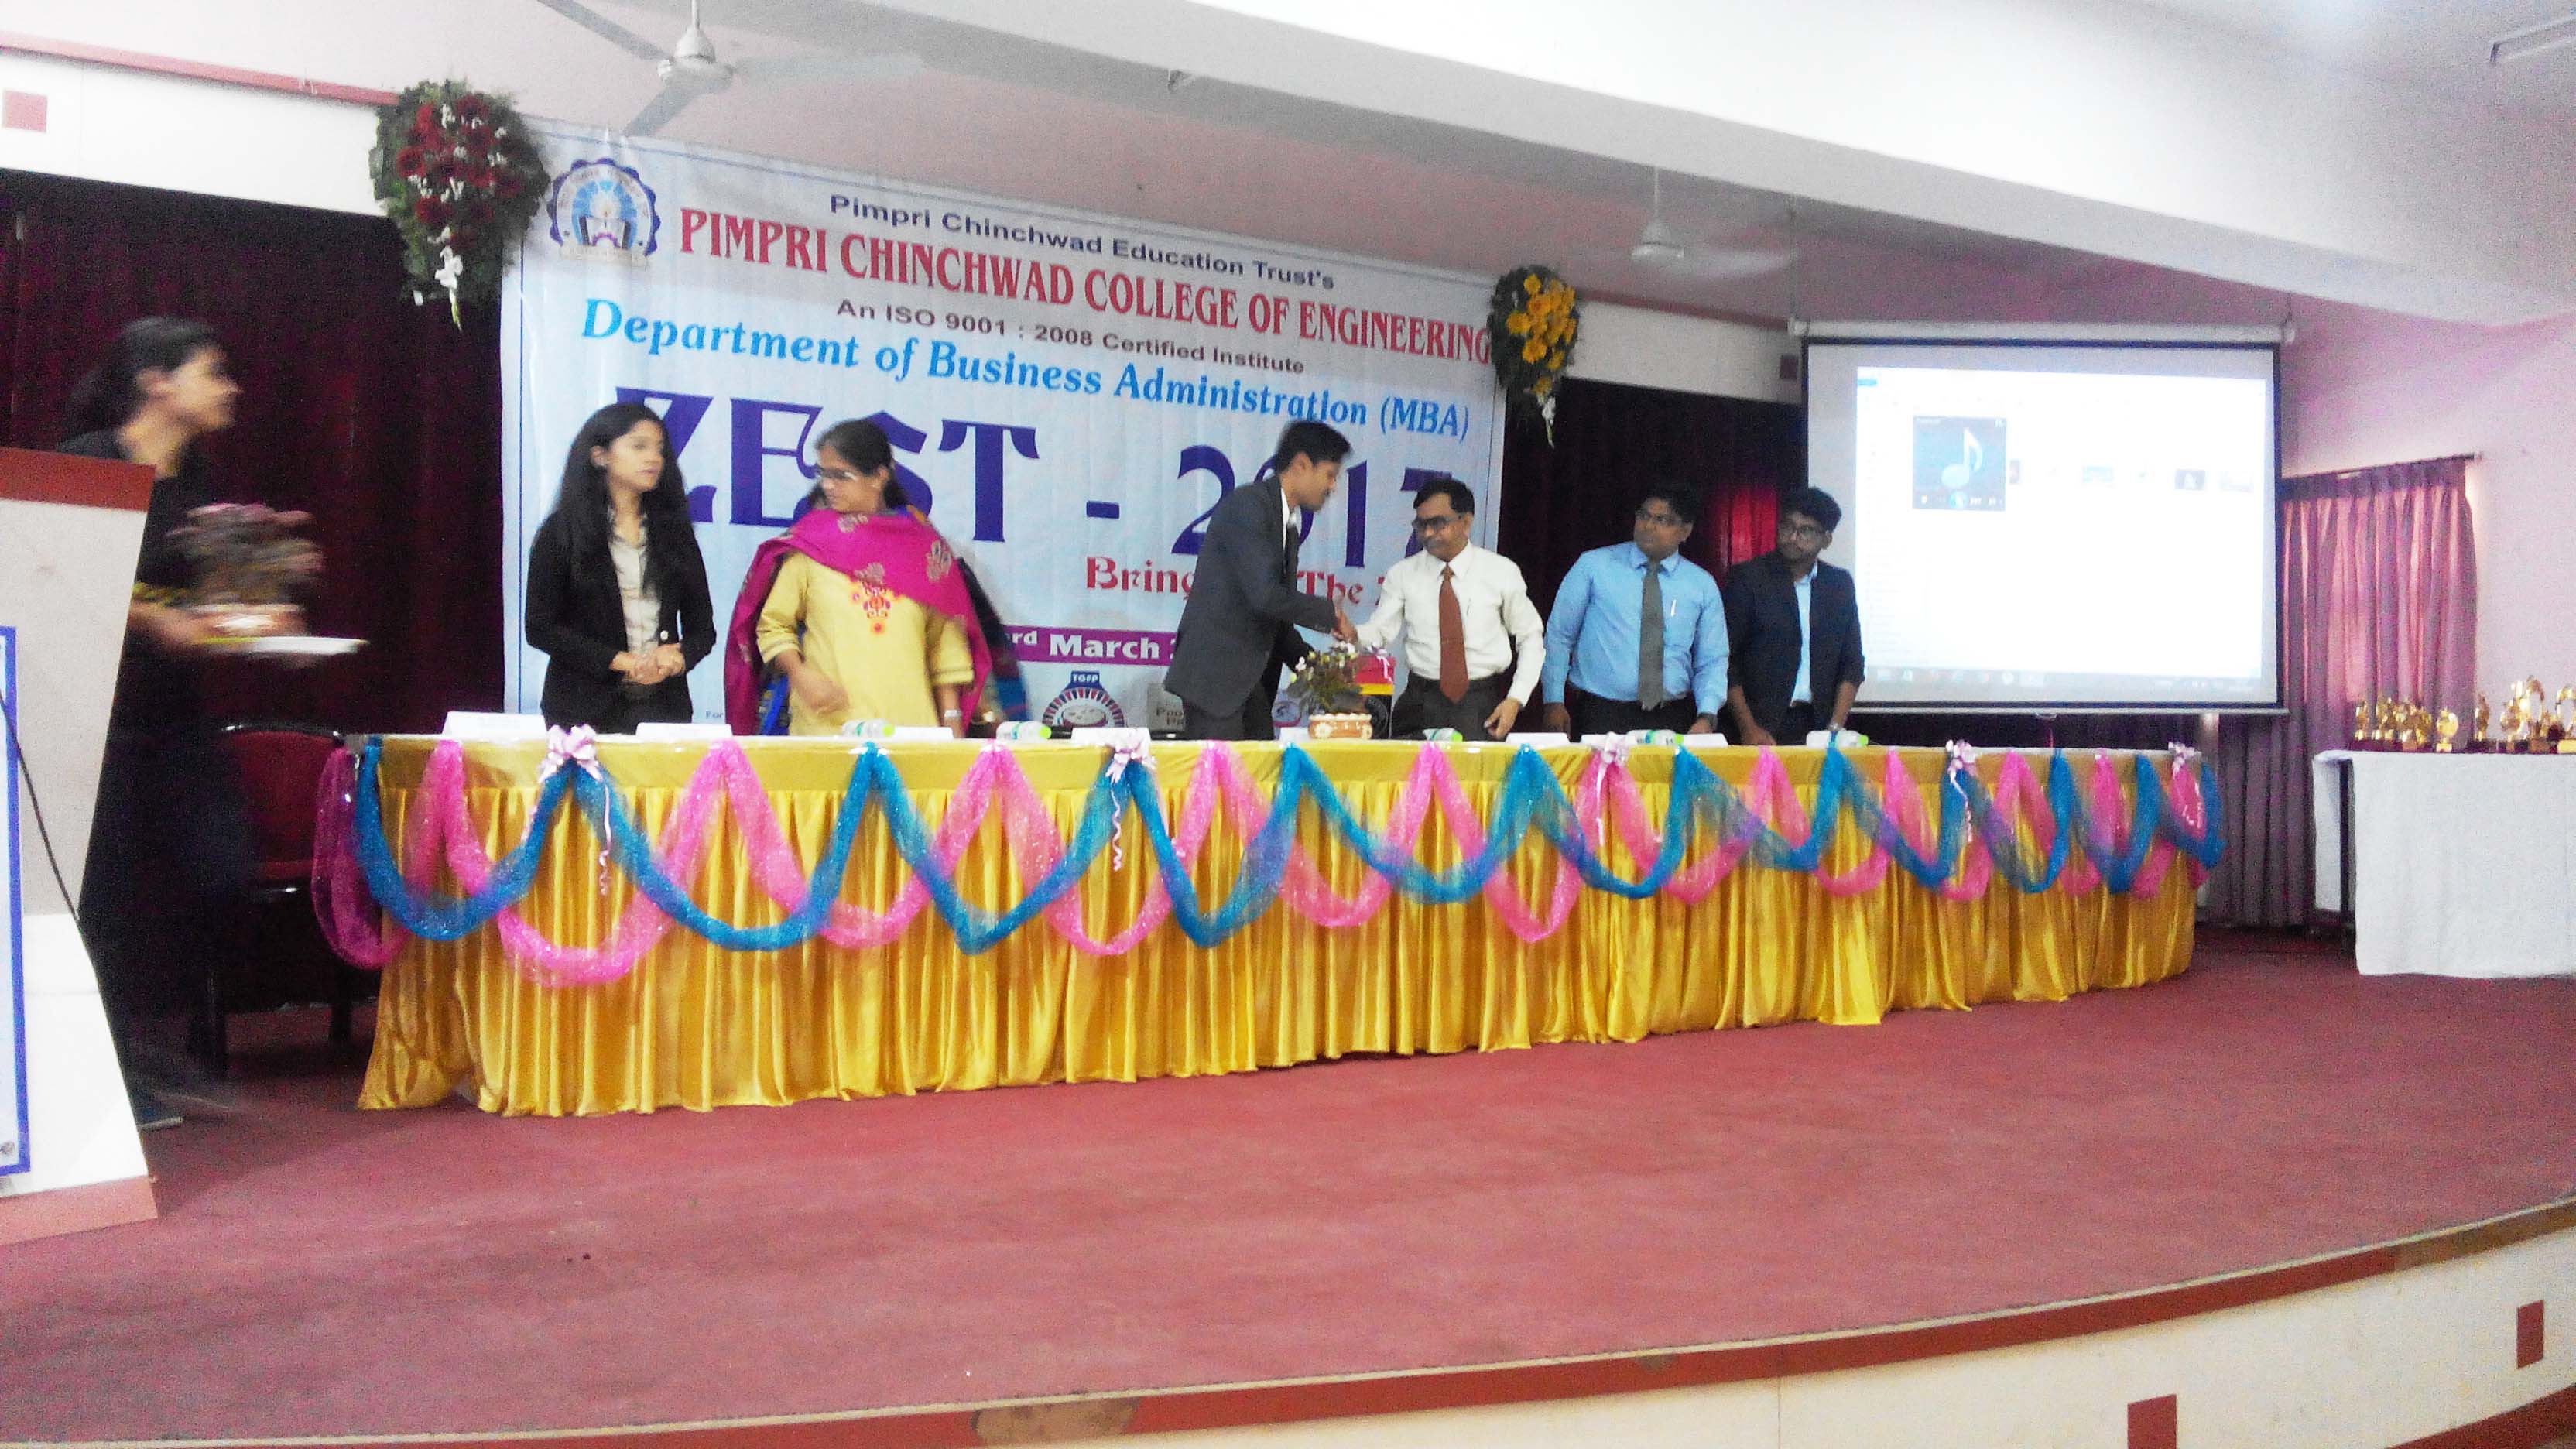 Seminar at PCCOE Pune